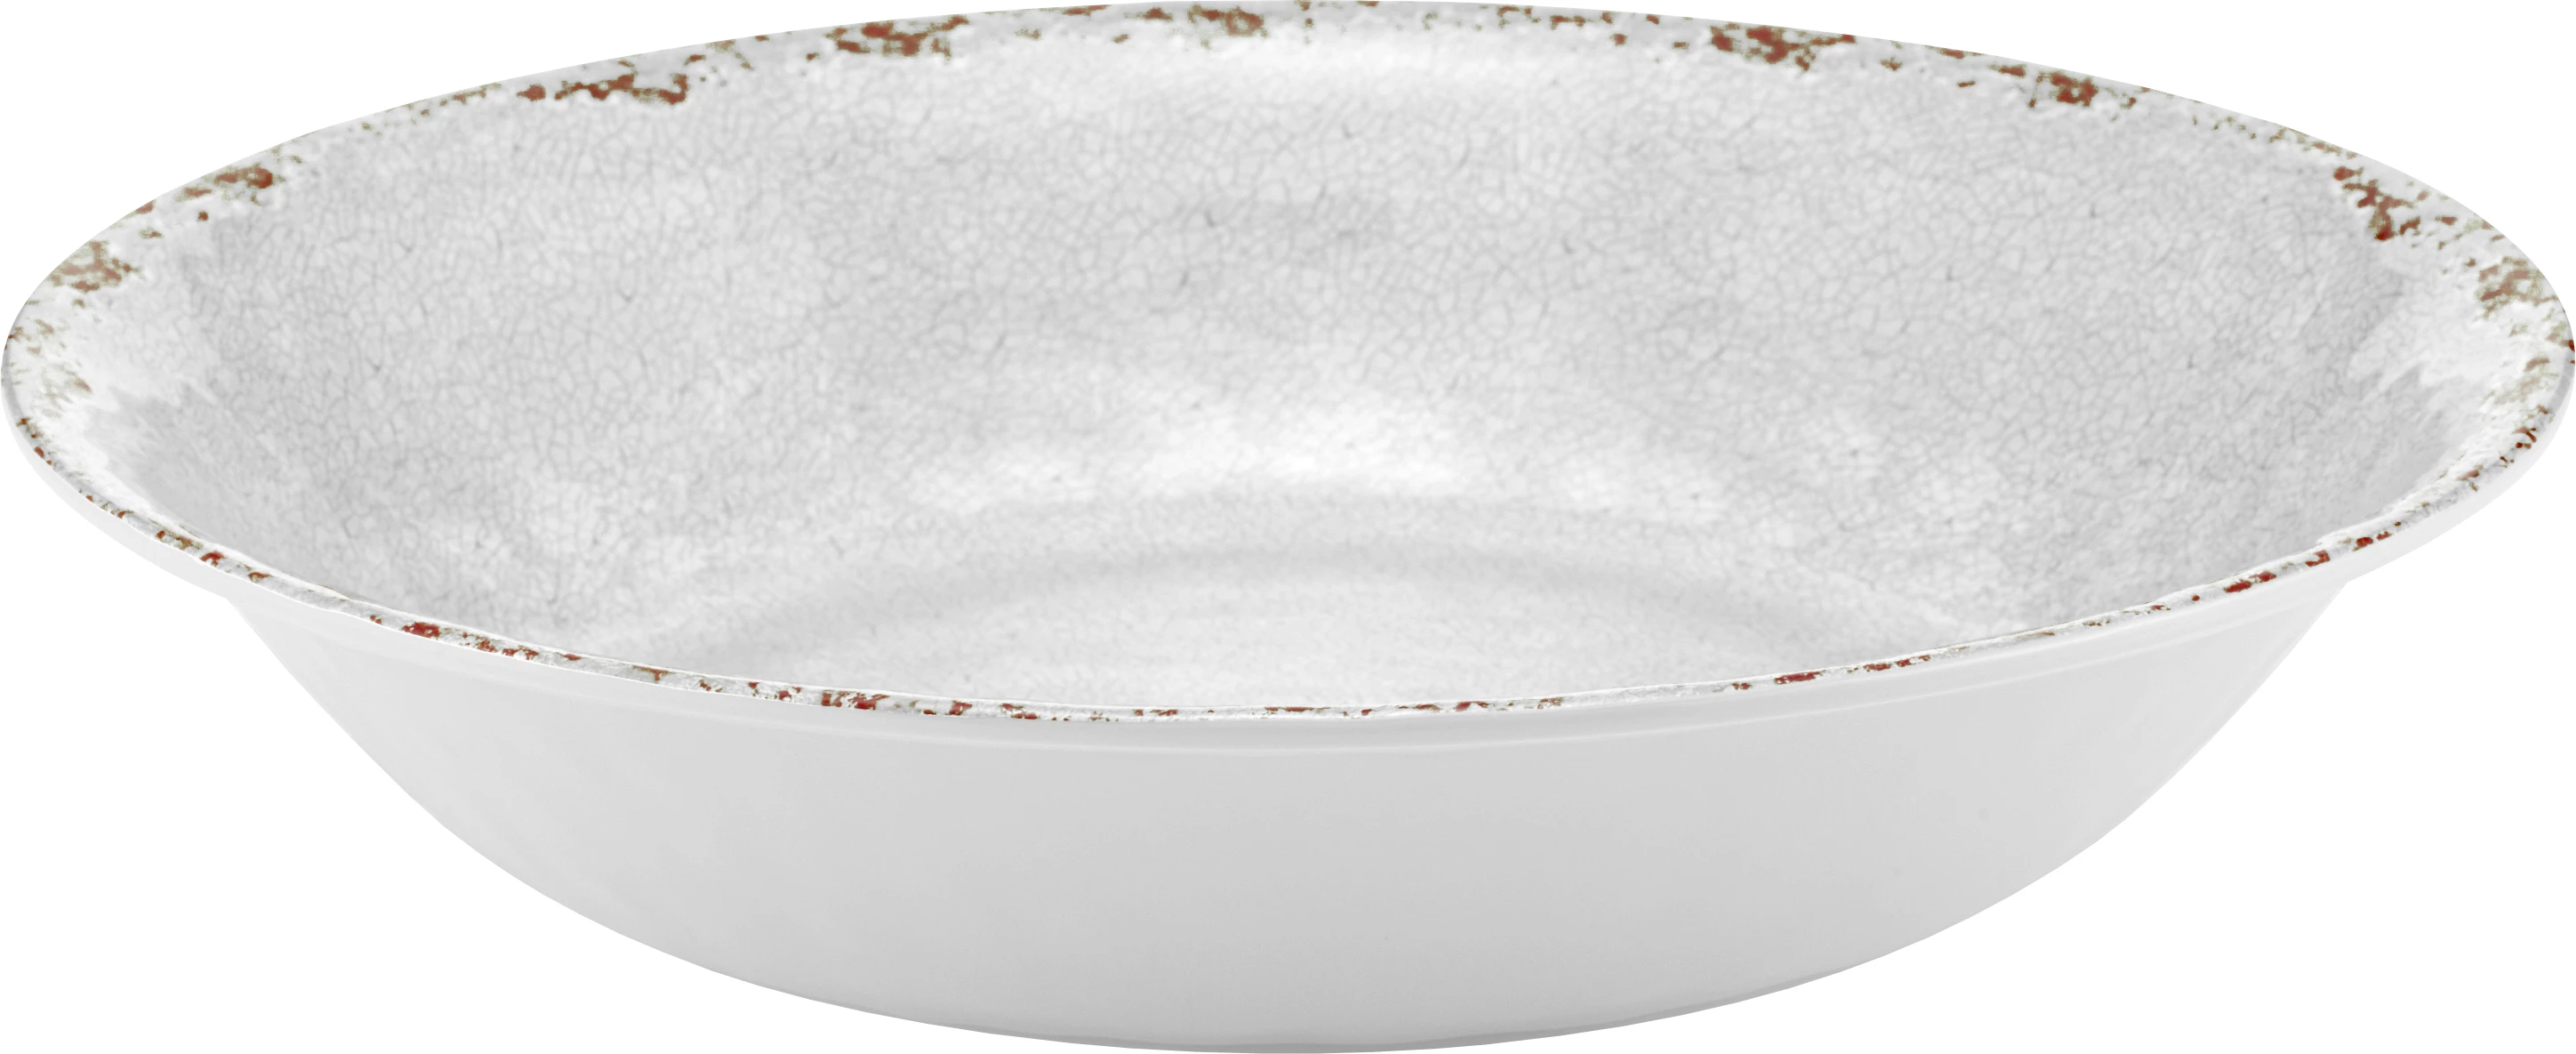 Dalebrook Casablanca skål, hvid, 350 cl, ø35 cm